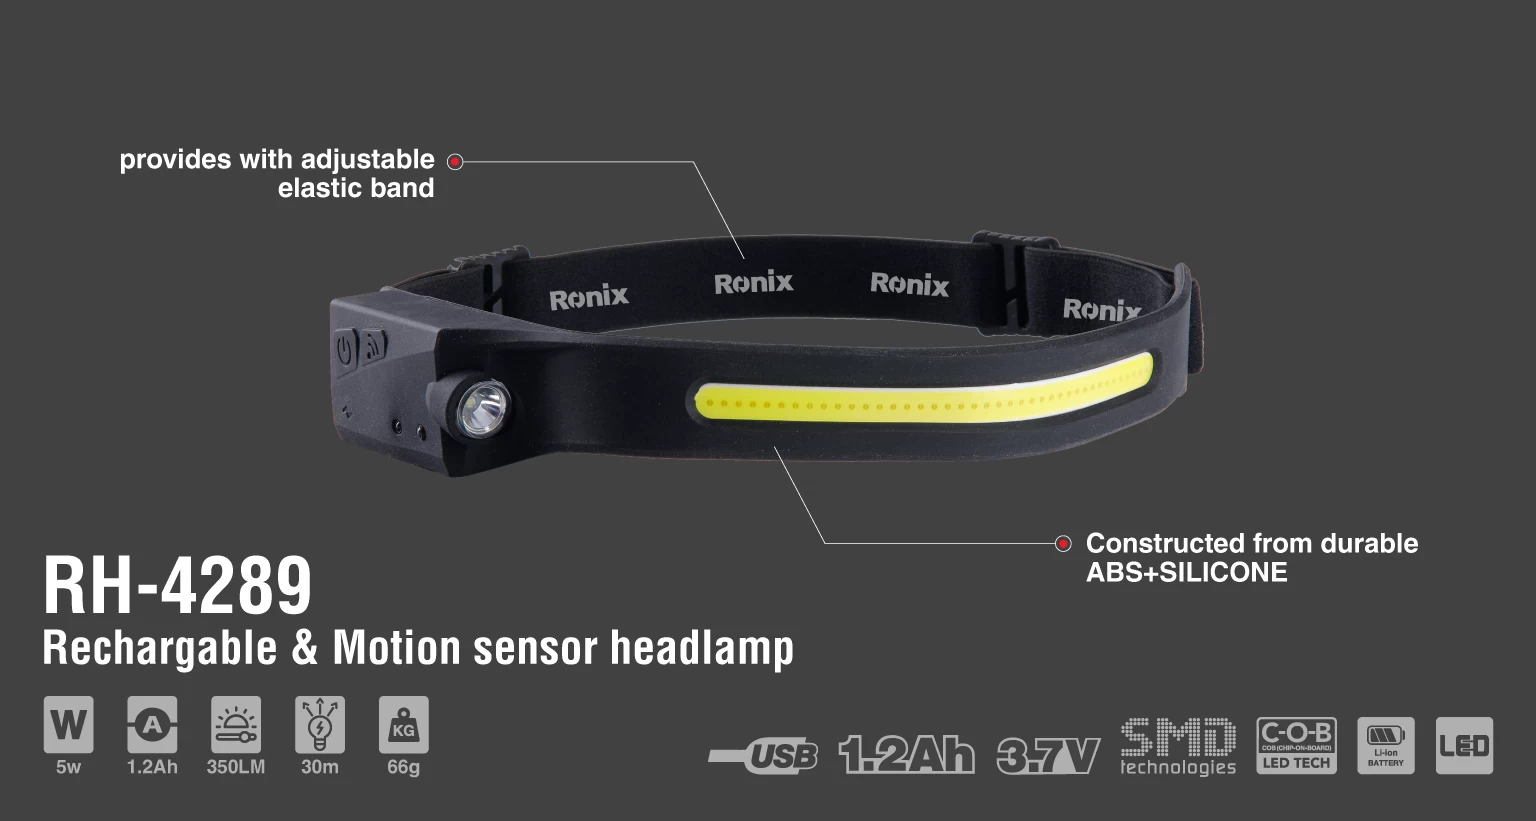 5w Rechargable & Motion sensor headlamp 350LM_details